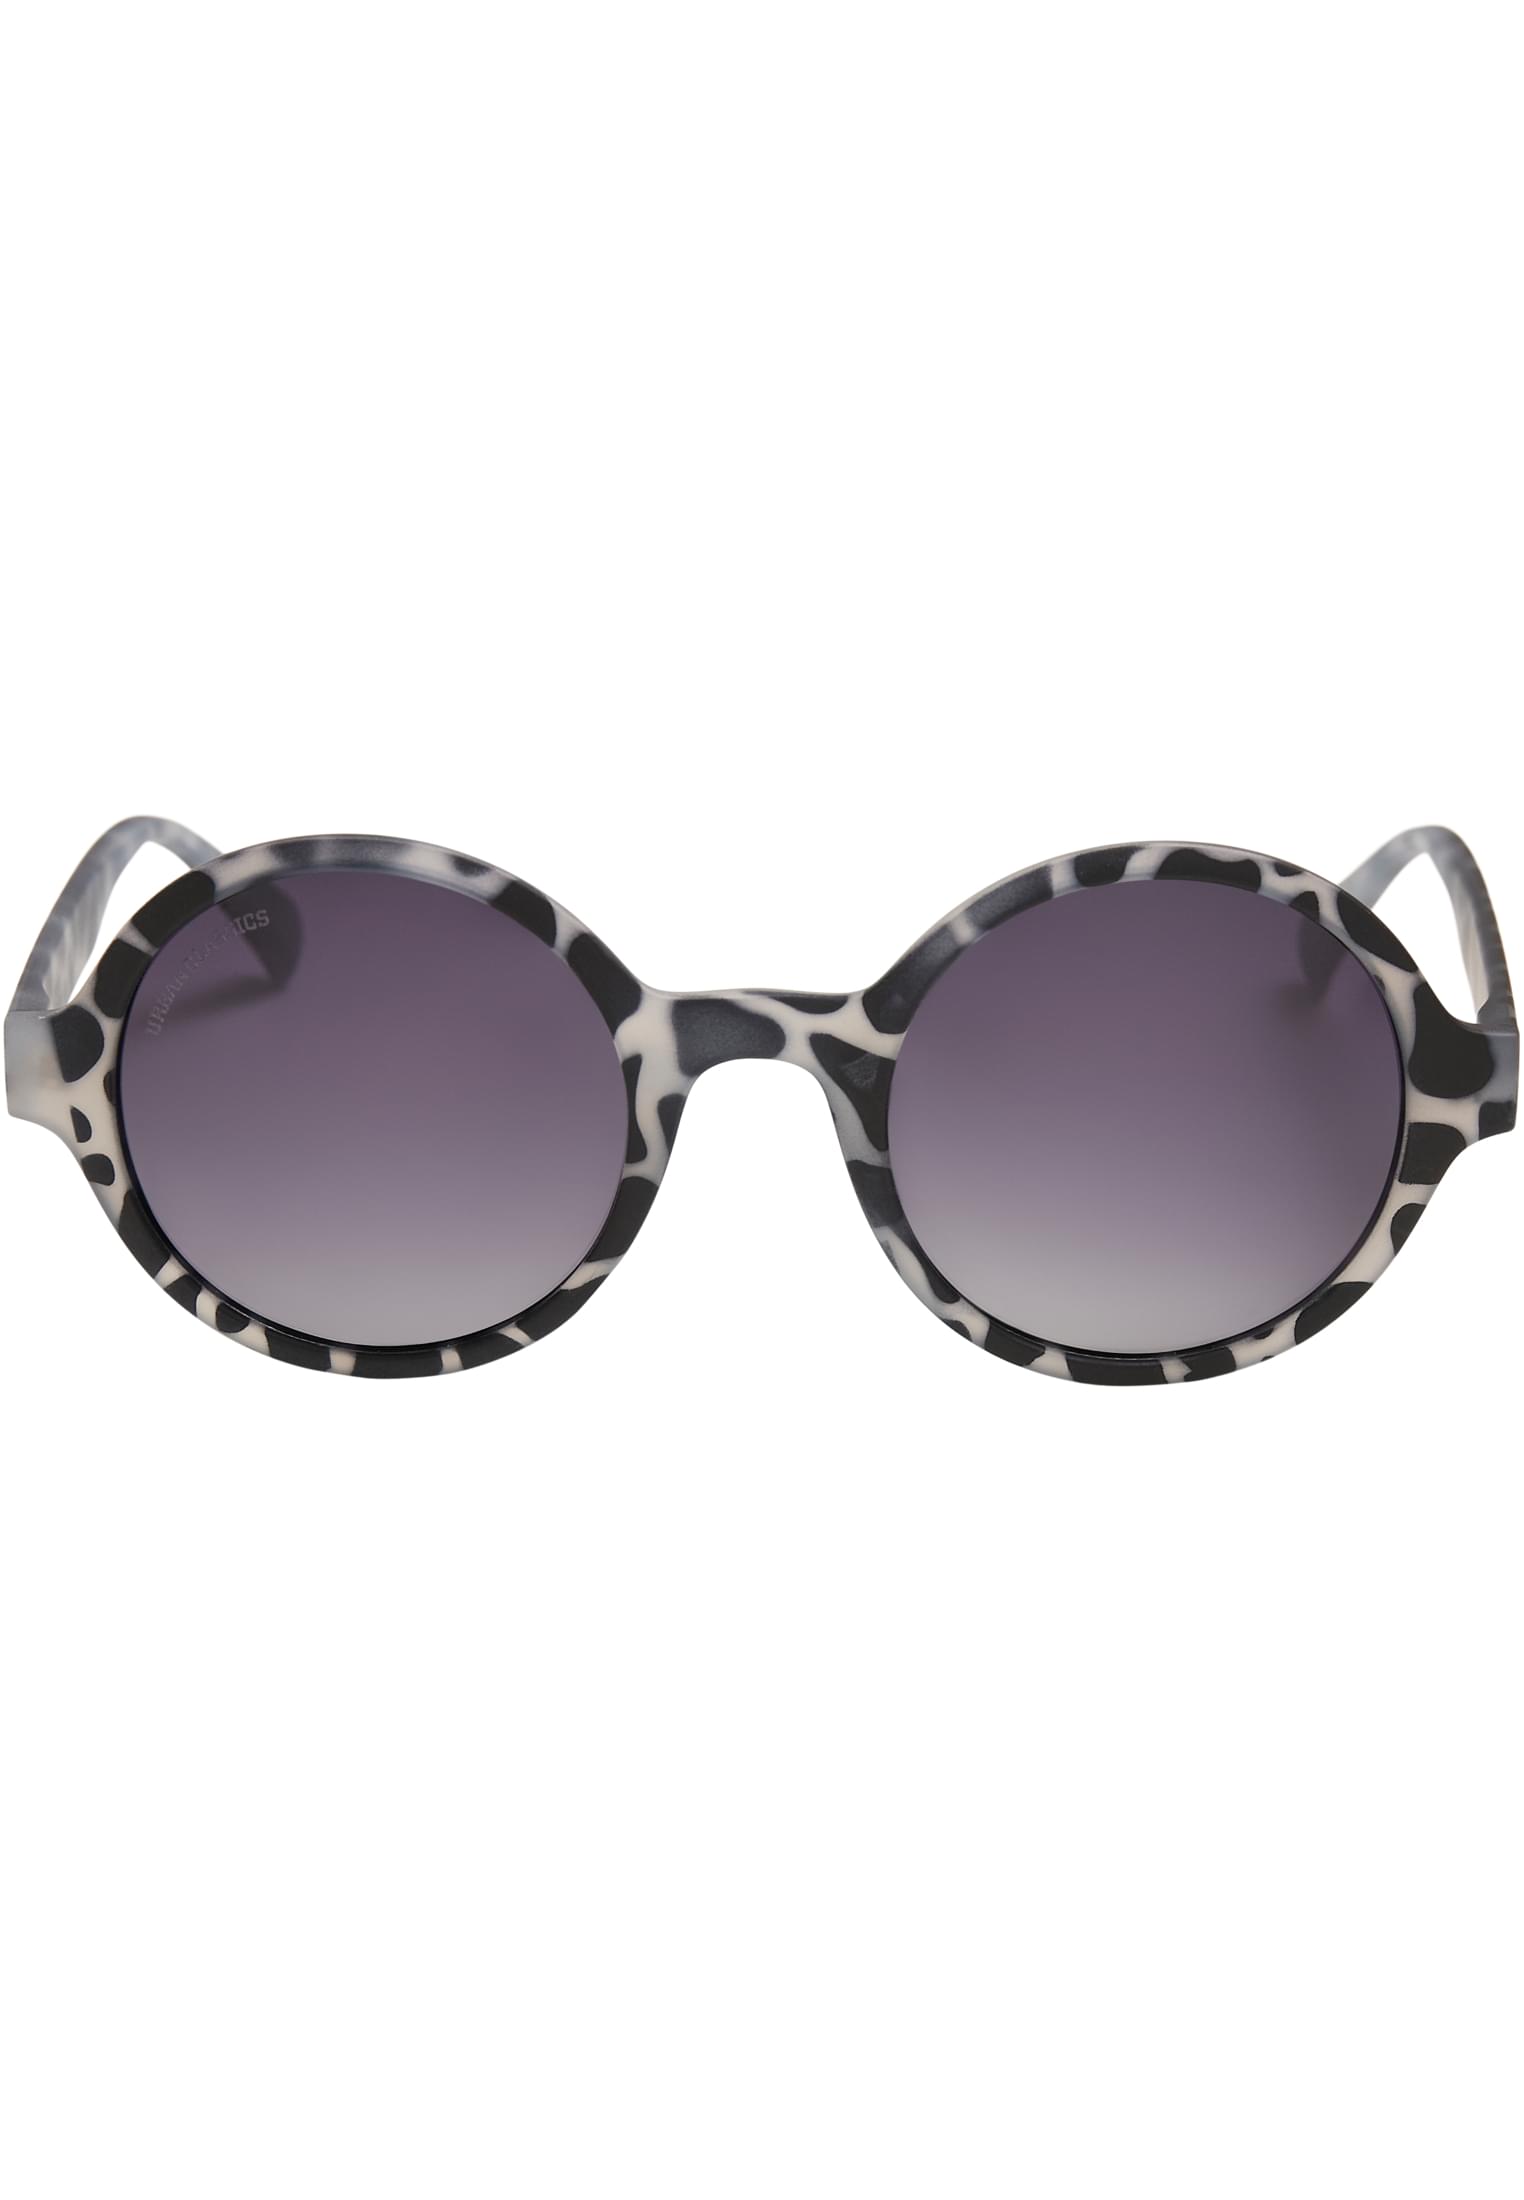 Accessoires Sunglasses Retro Funk UC in Farbe grey leo/black